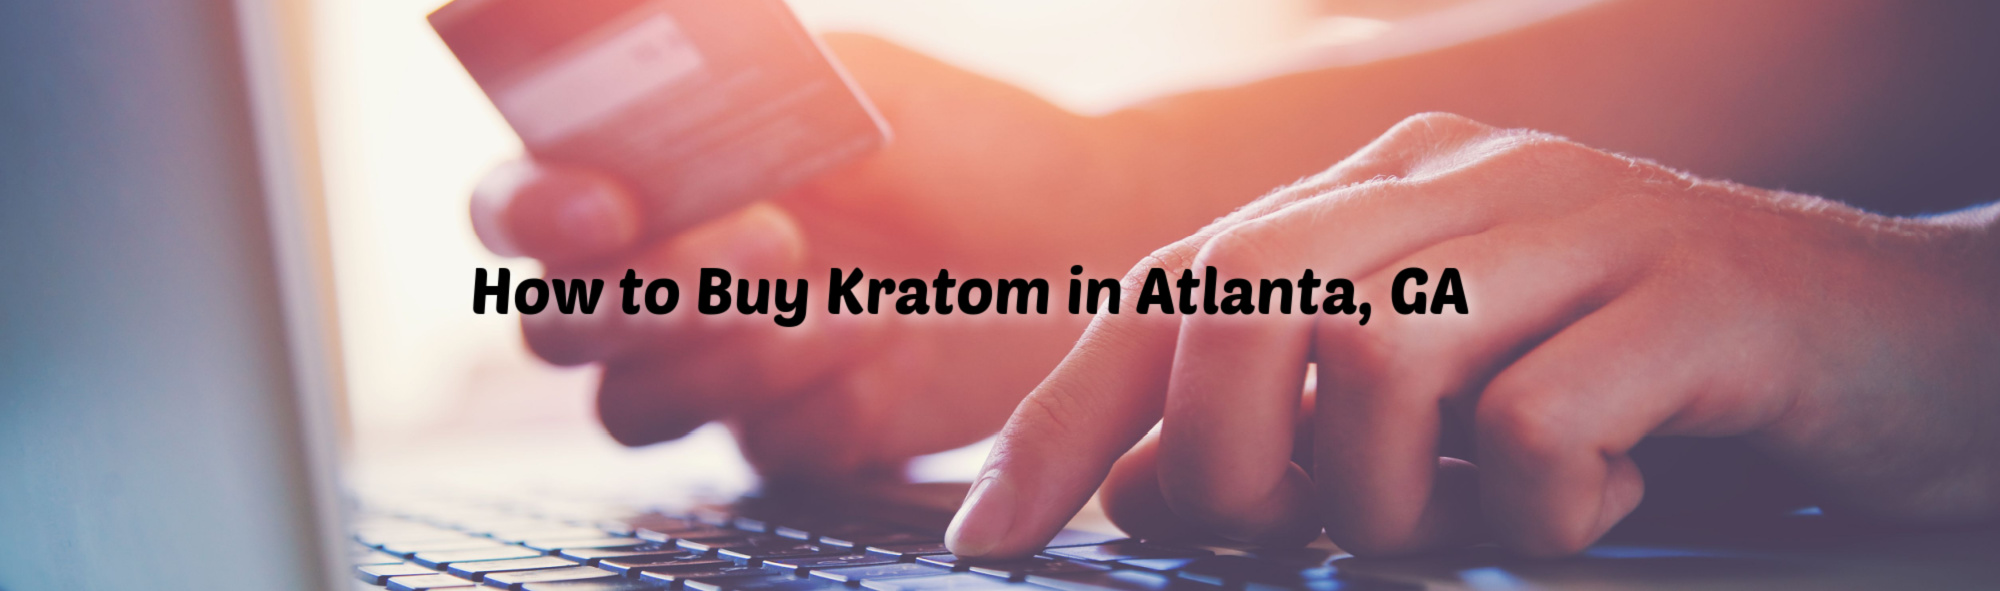 image of how to buy kratom in atlanta ga